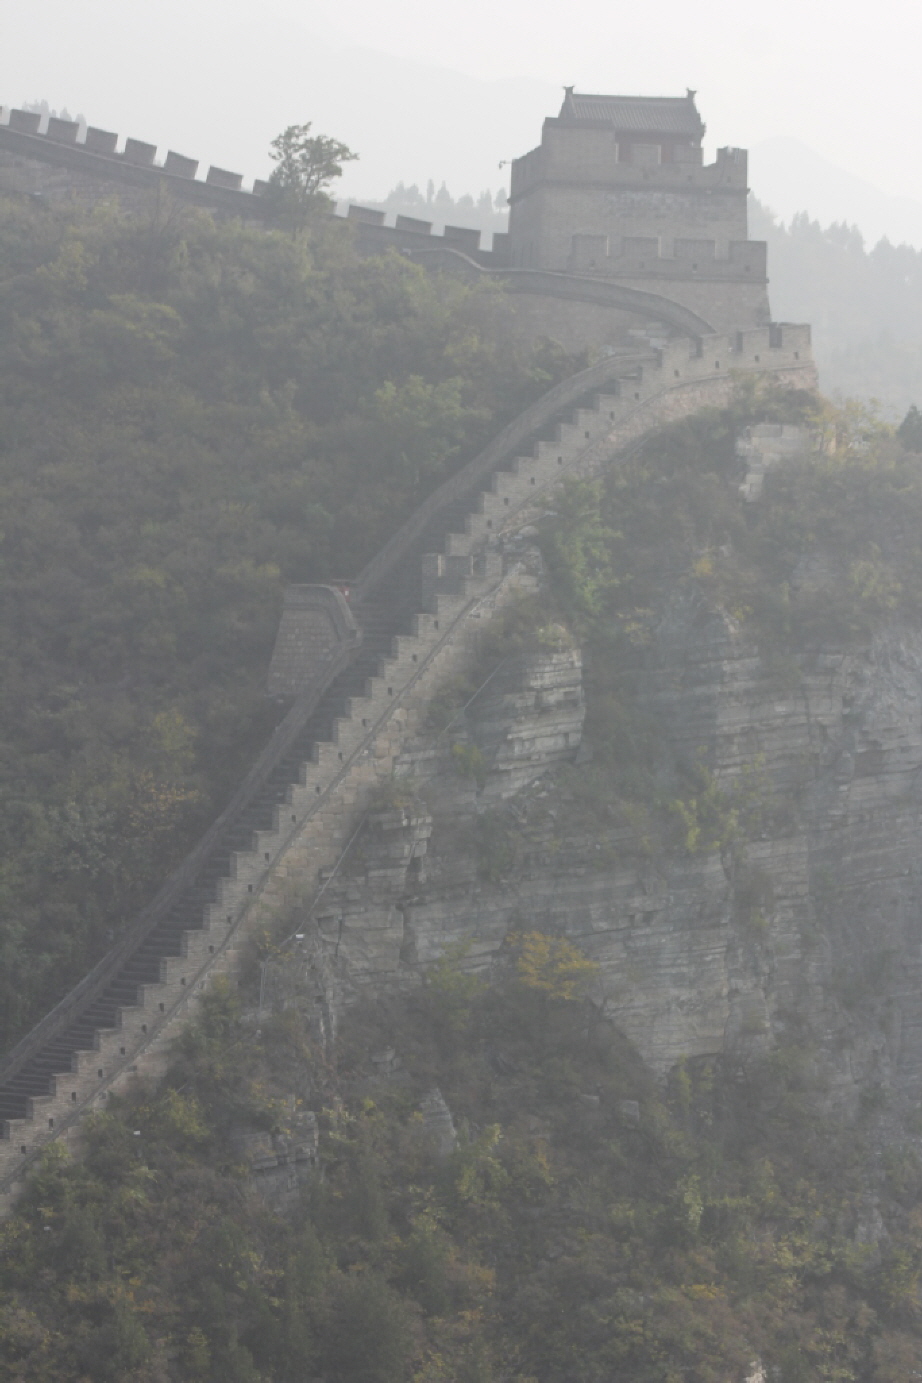 Die Große Mauer: Es wird angenommen, dass der Bau der Großen Mauer bereits im 7. Jahrhundert v. Chr. begann. Die ältesten bisher gefundenen Abschnitte sind die Große Mauer des Qi-Herzogtums in der heutigen Provinz Shandong und die Große Mauer des Königrei